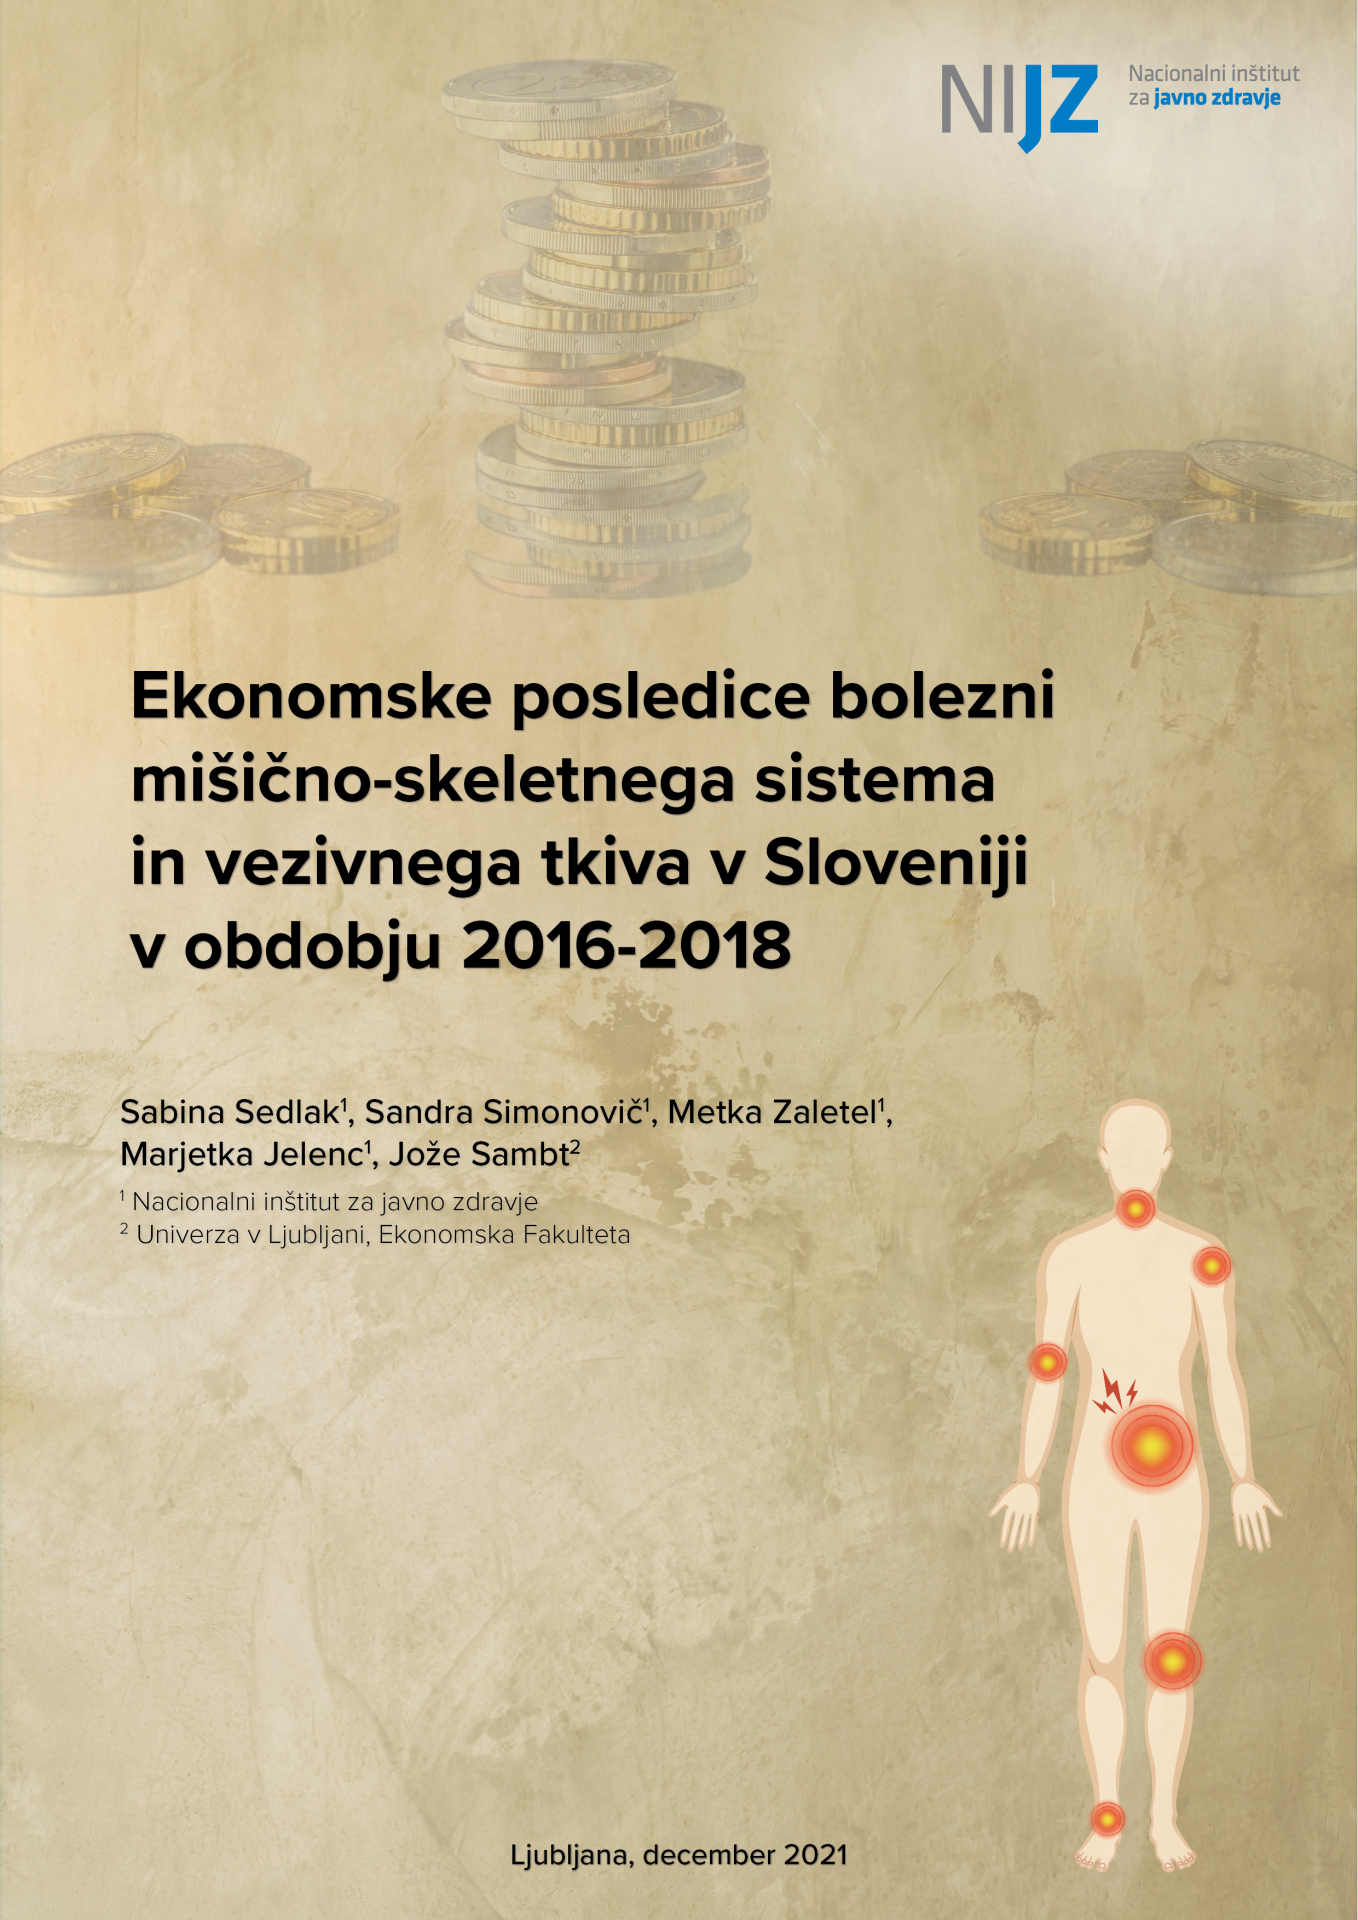 Ekonomske posledice bolezni mišicno-skeletnega sistema in vezivnega tkiva v Sloveniji v obdobju 2016-2018